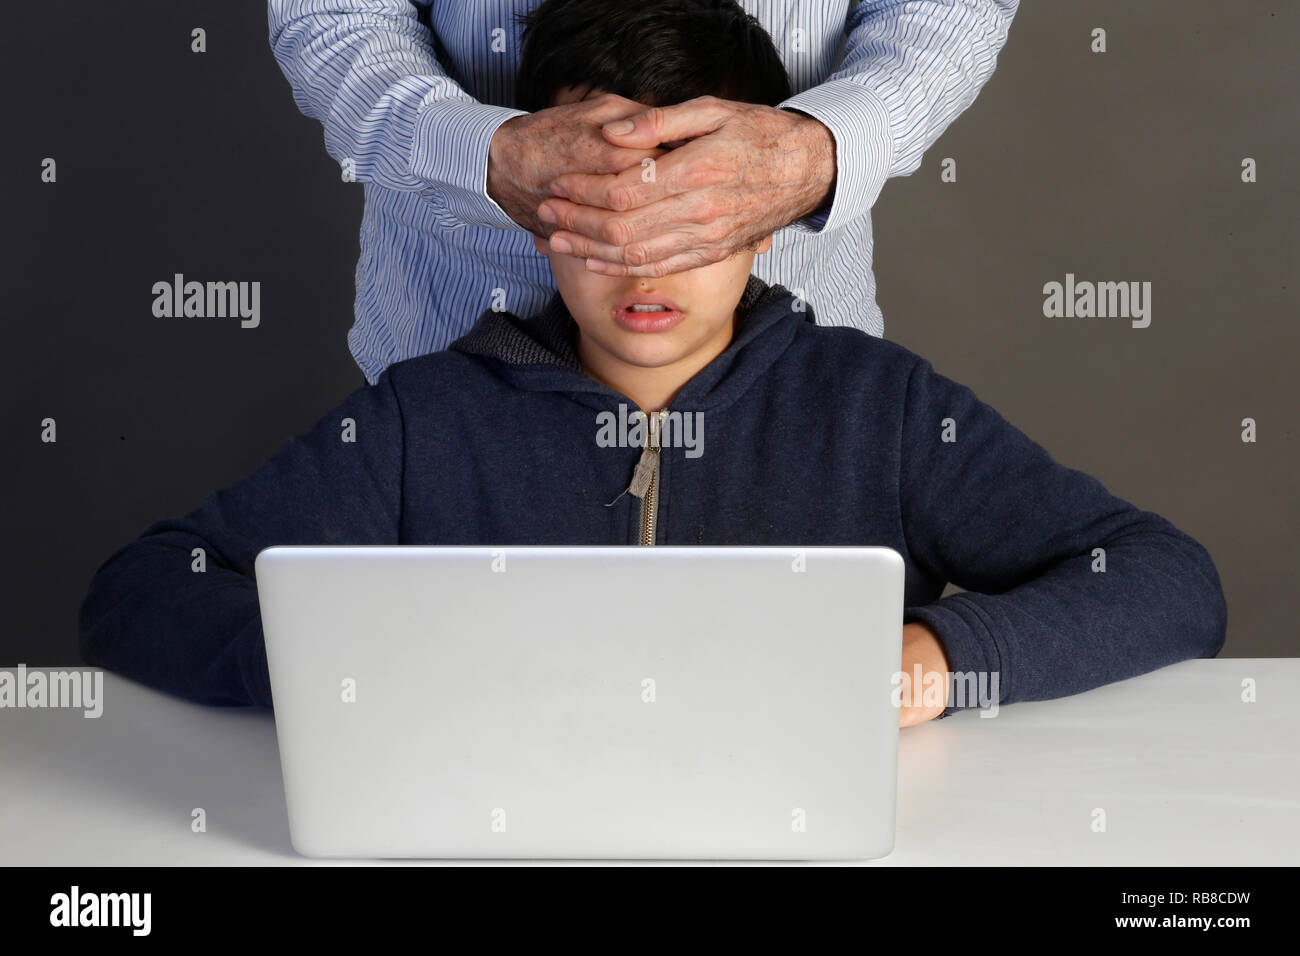 12-jähriger Junge verboten auf einer Website zu suchen. Paris, Frankreich. Stockfoto